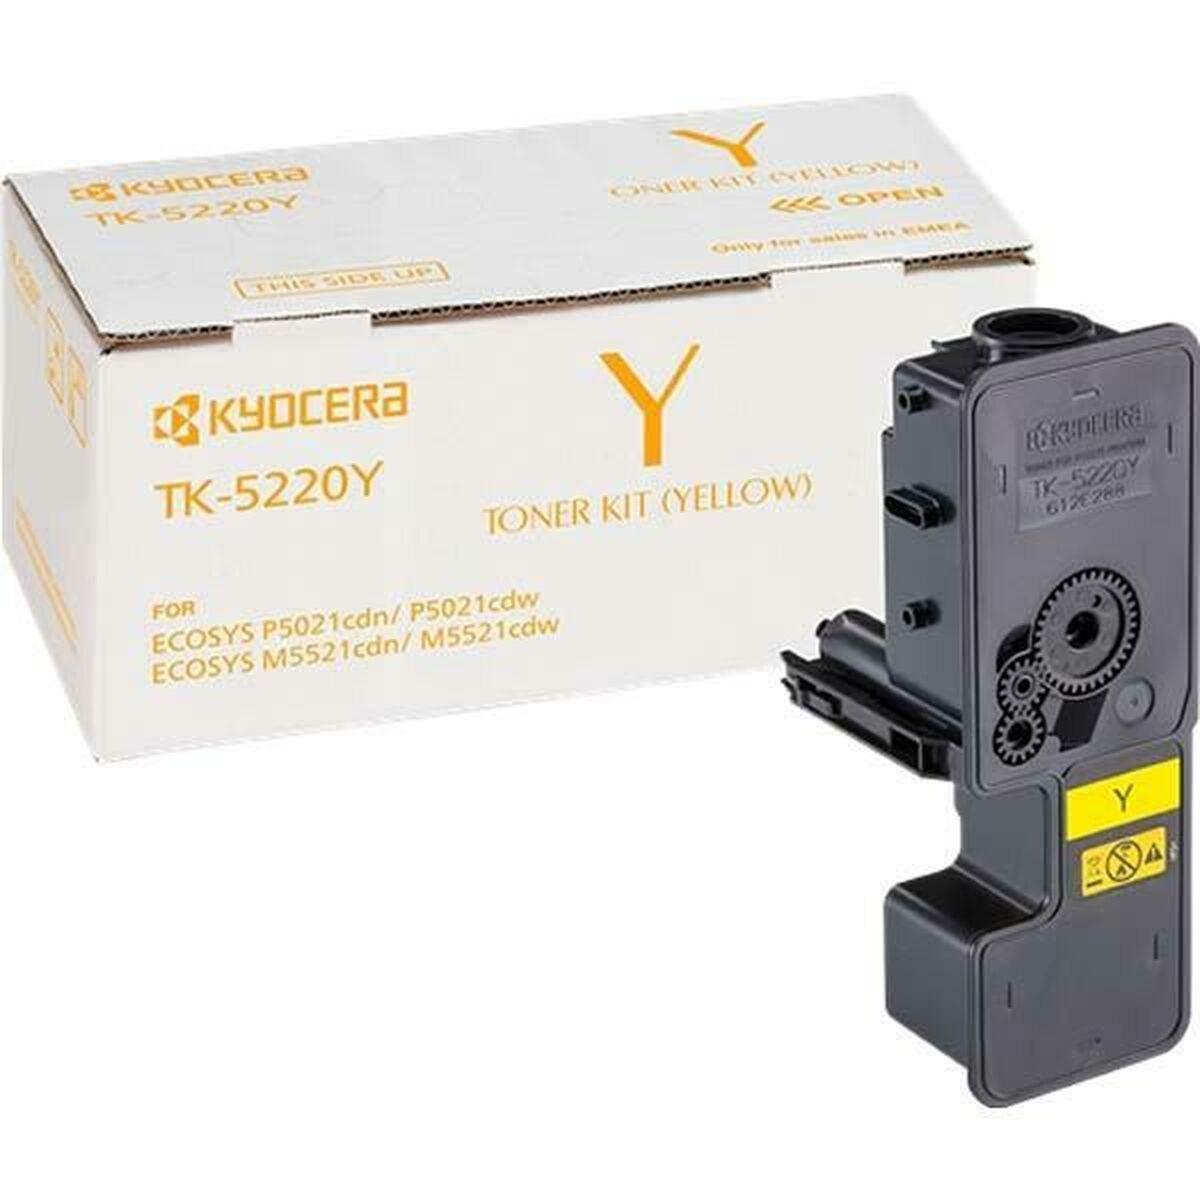 Se Kyocera TK-5220Y Yellow Lasertoner Original hos Boligcenter.dk